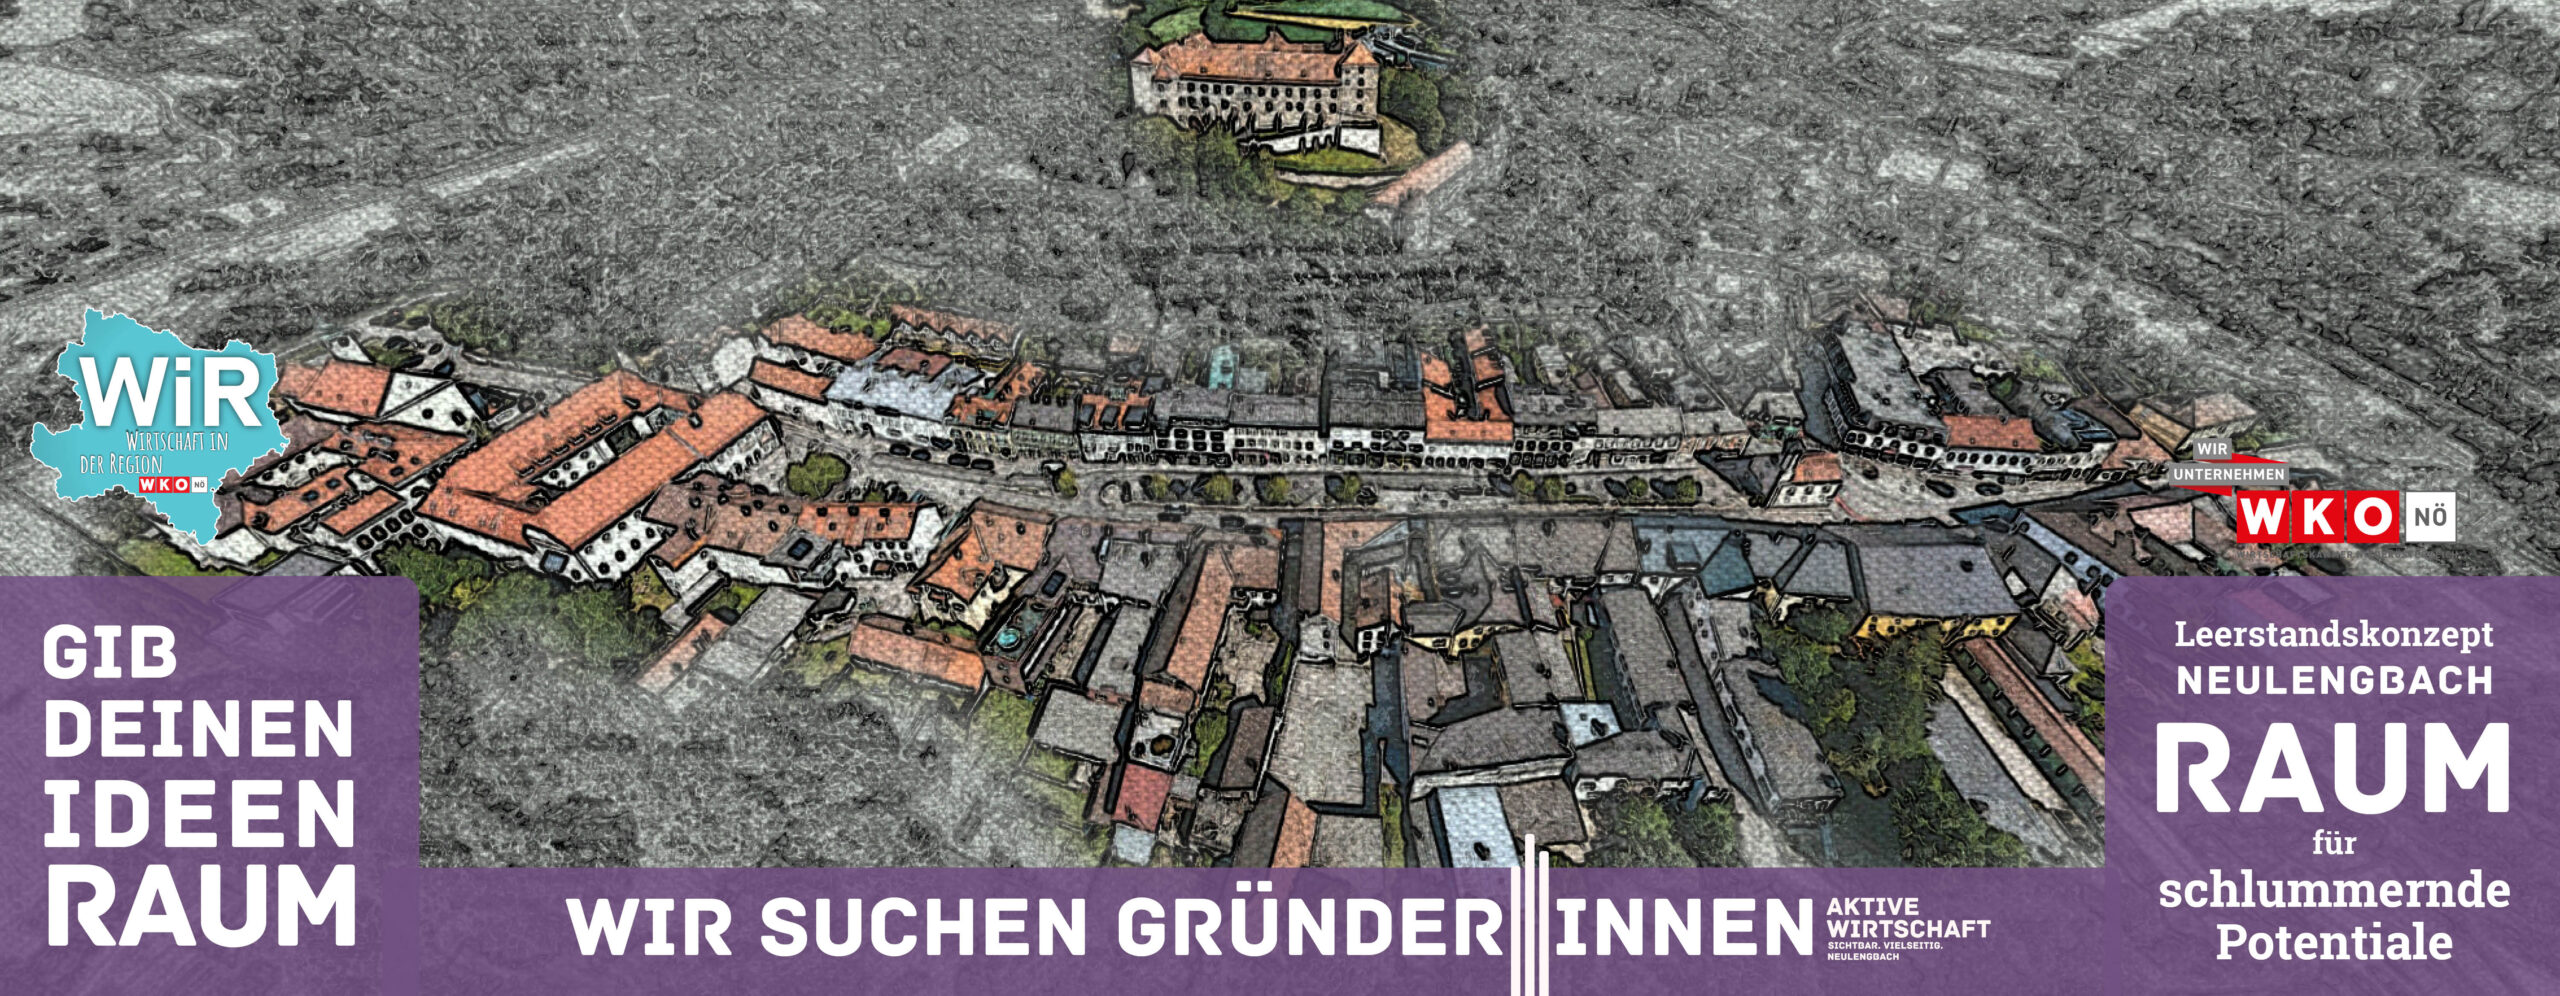 Stadtgemeinde Neulengbach - Home - Stadtgemeinde - Unsere Gemeinde -  Veranstaltungen